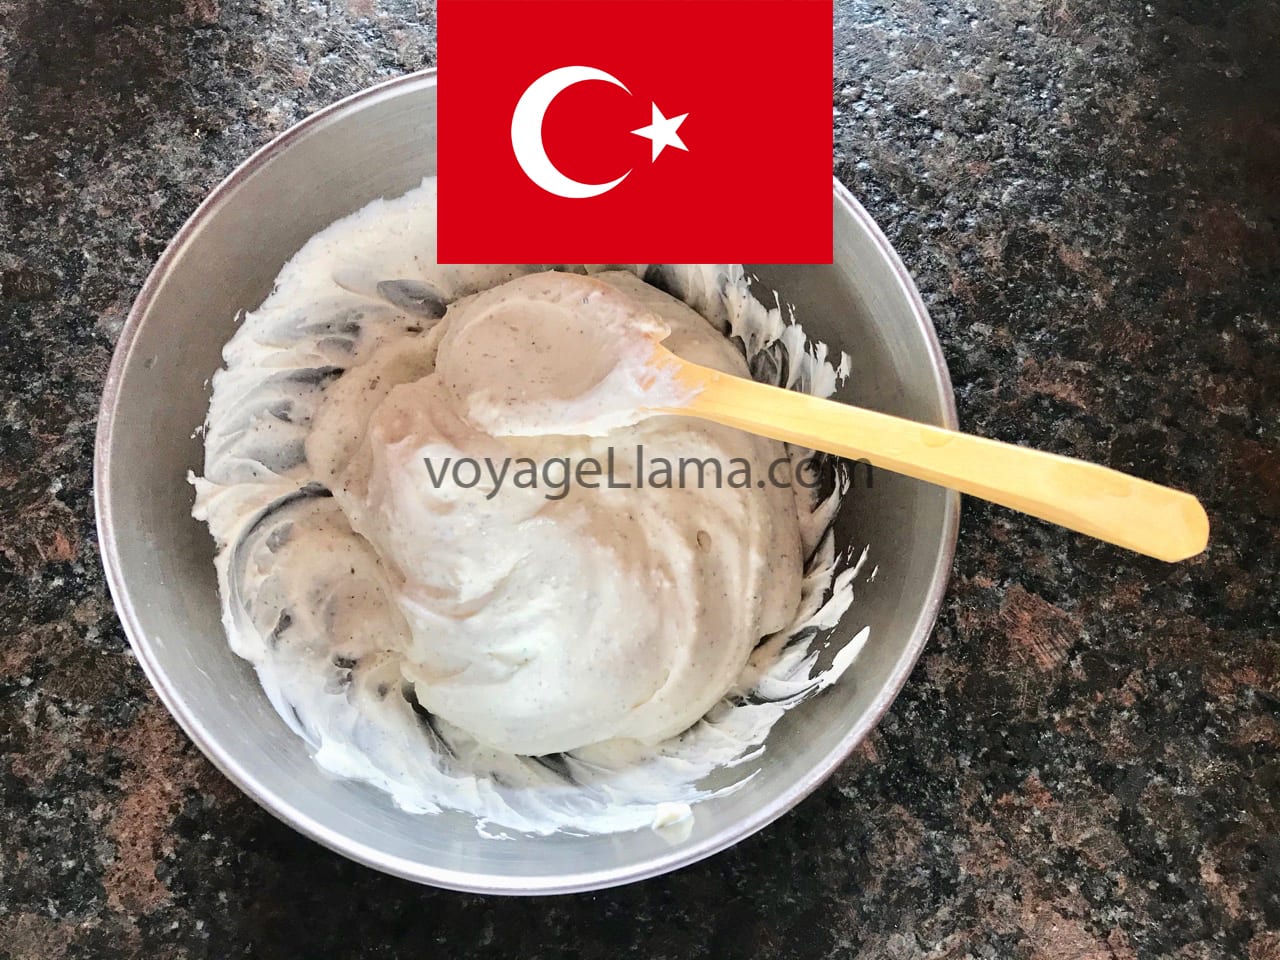 Cacık, der köstliche salzige Yoğurt